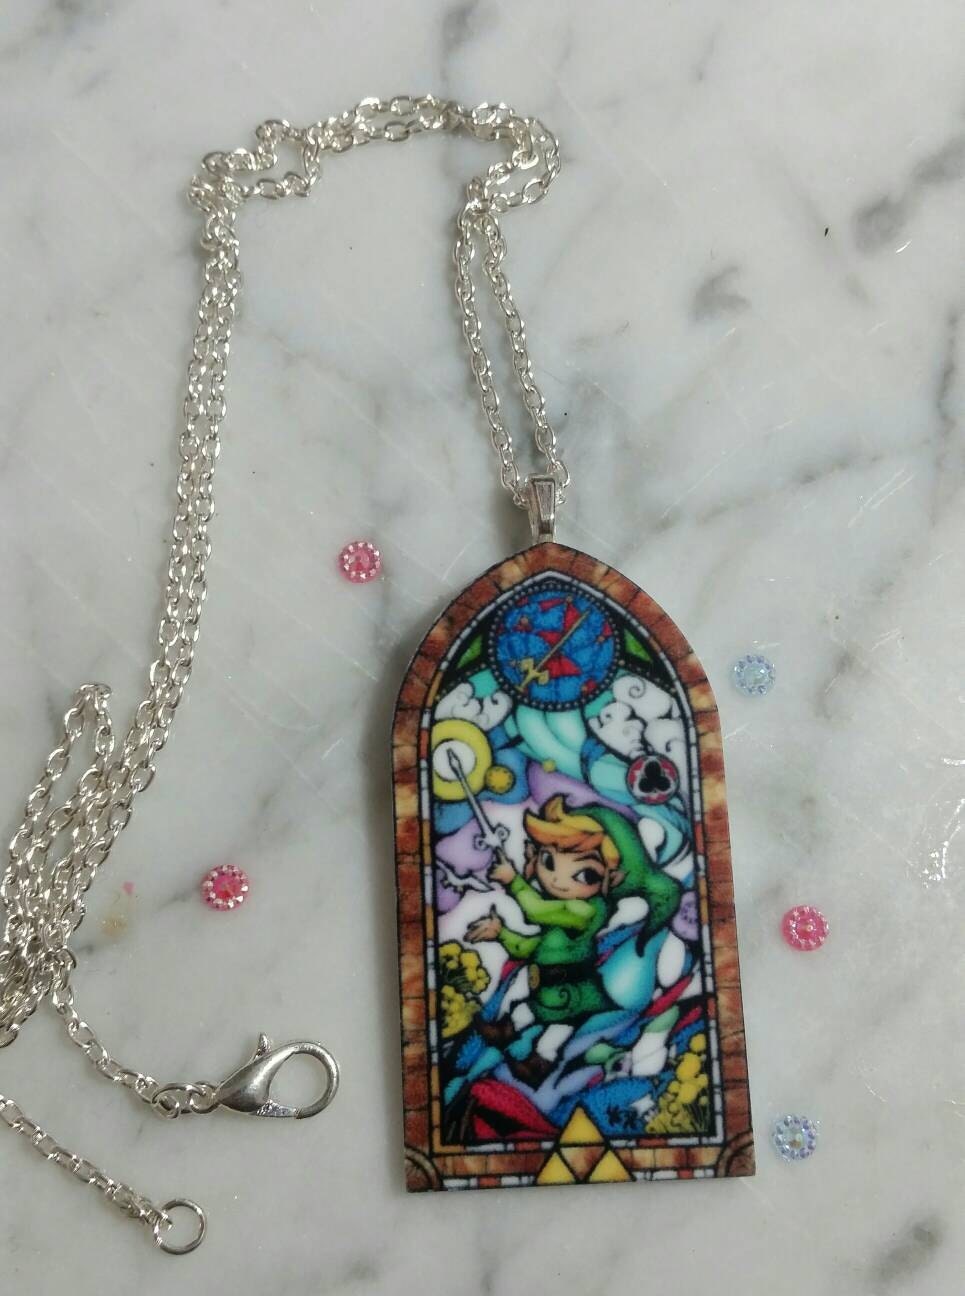 Legend of Zelda necklace